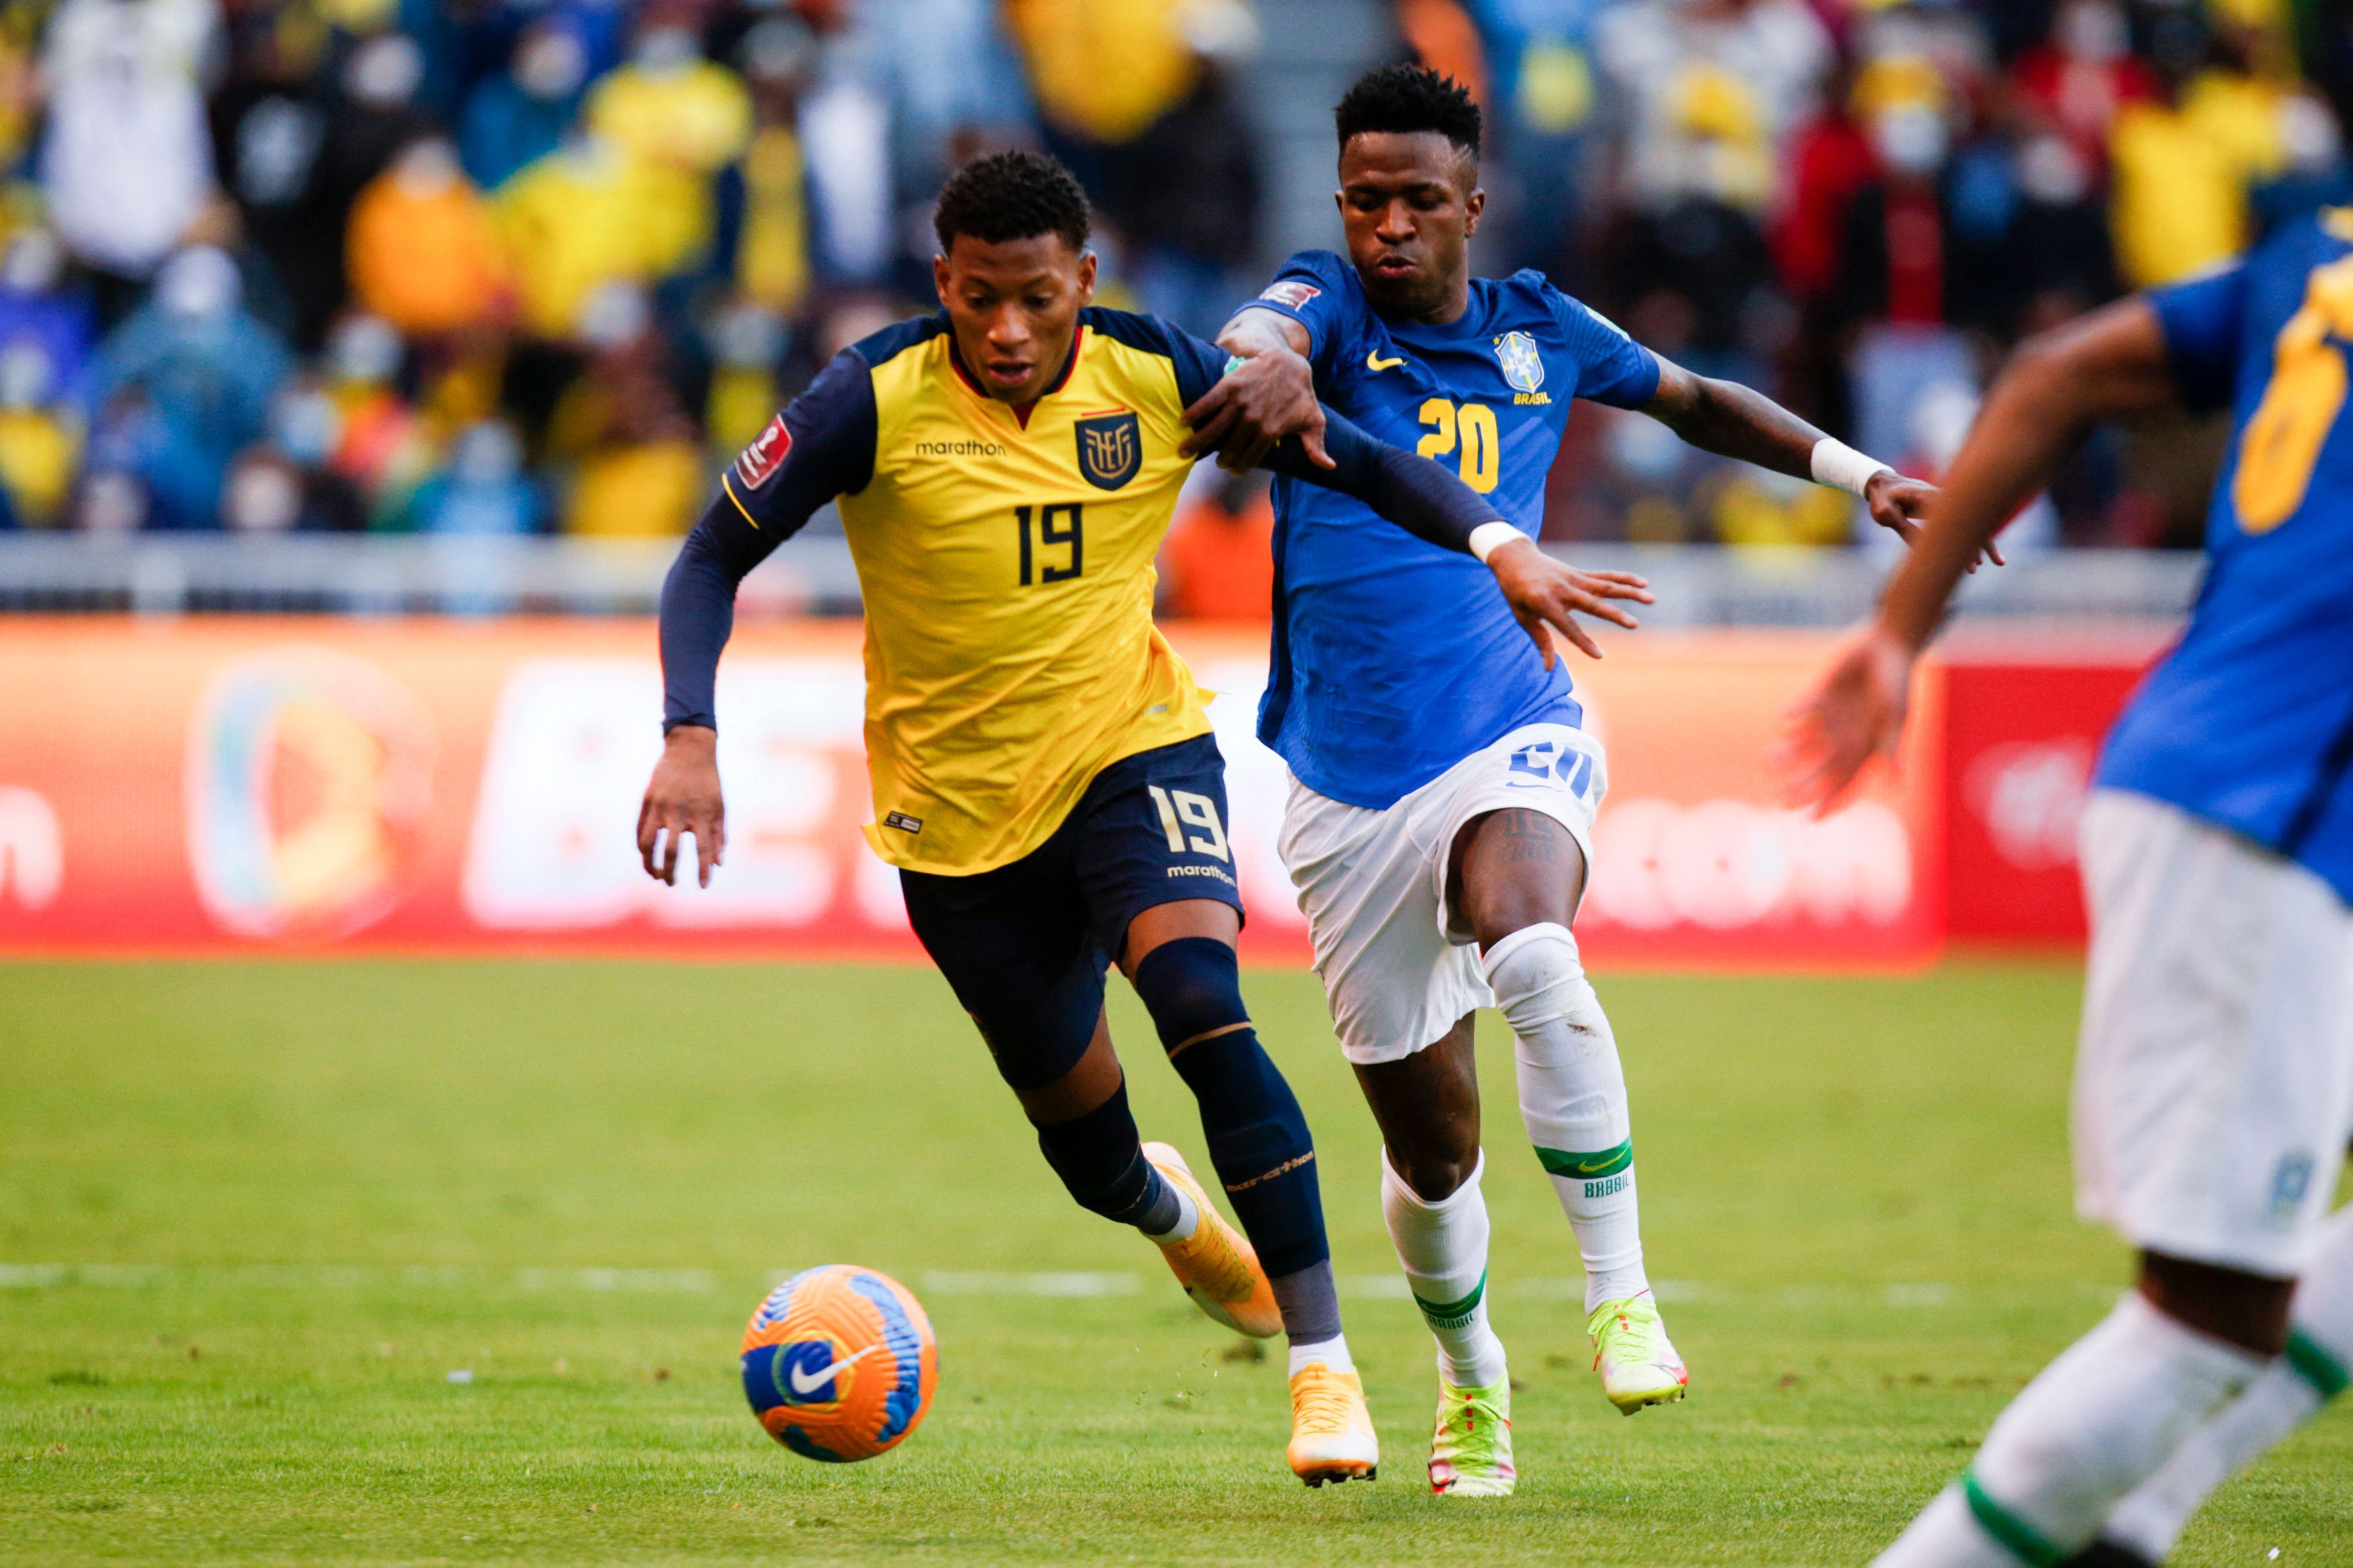 厄瓜多尔国家队竞猜,主场优势,死亡之组,厄瓜多尔足球队,小组出线